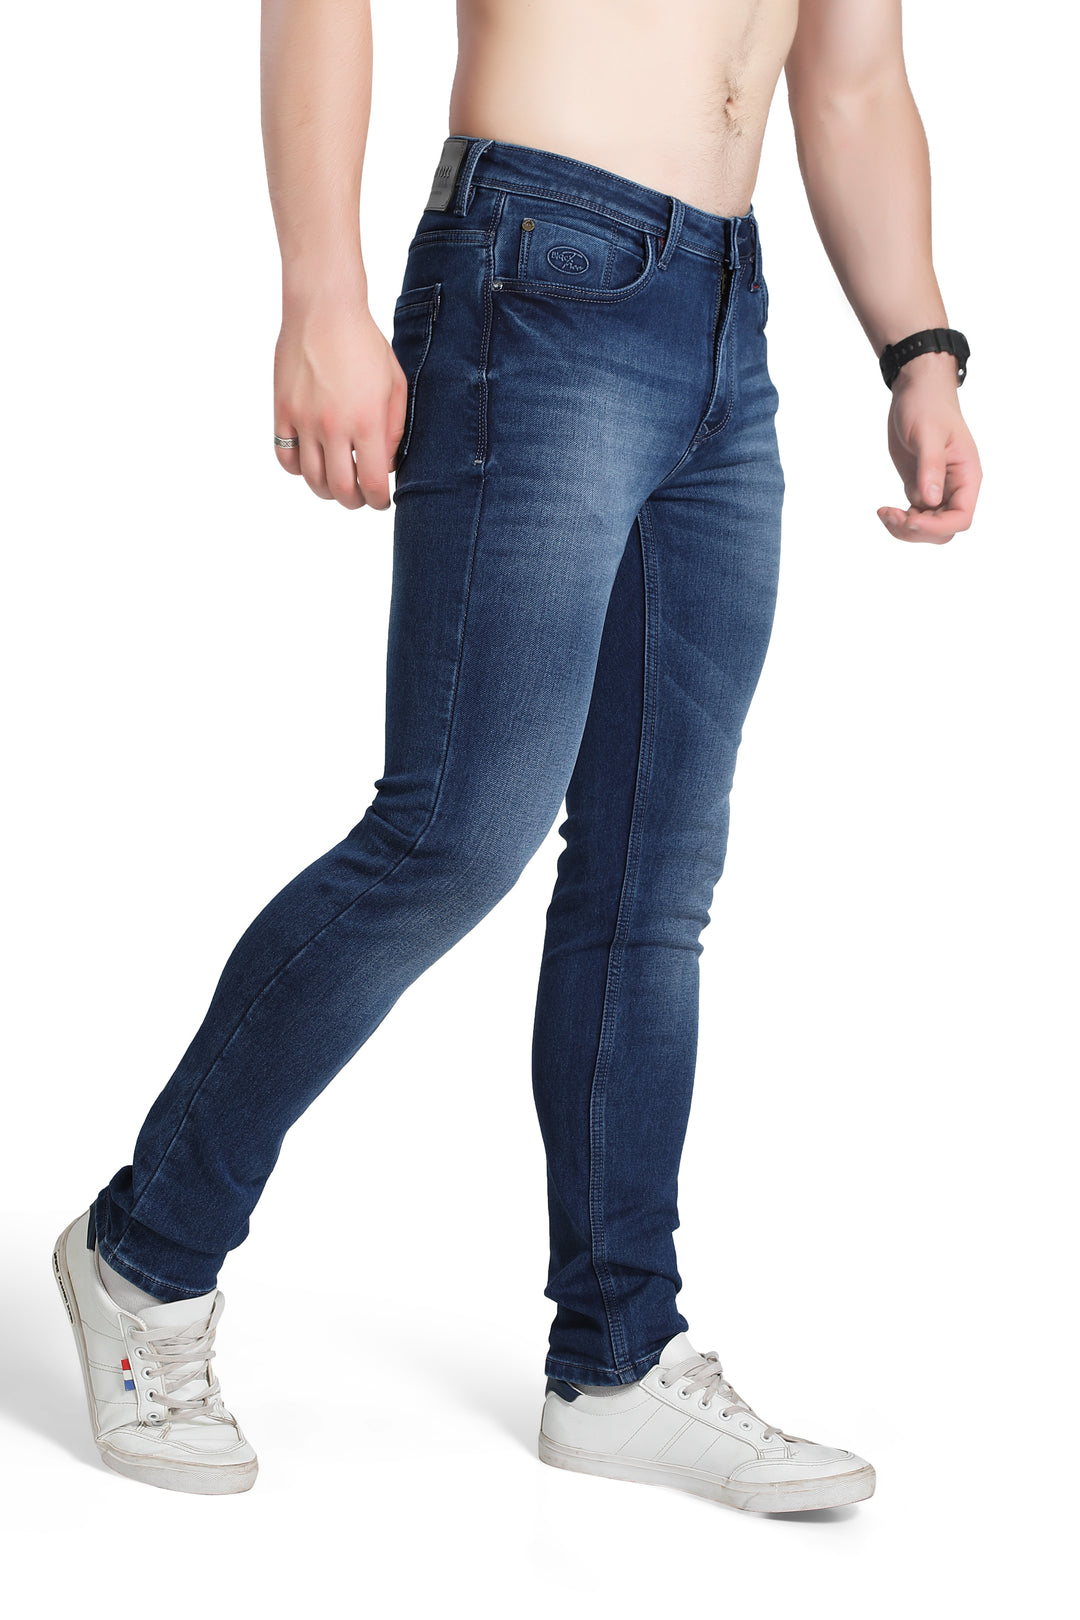 Black Tree Men's Designer Stretch Slim Fit Jeans for Men's BT002..